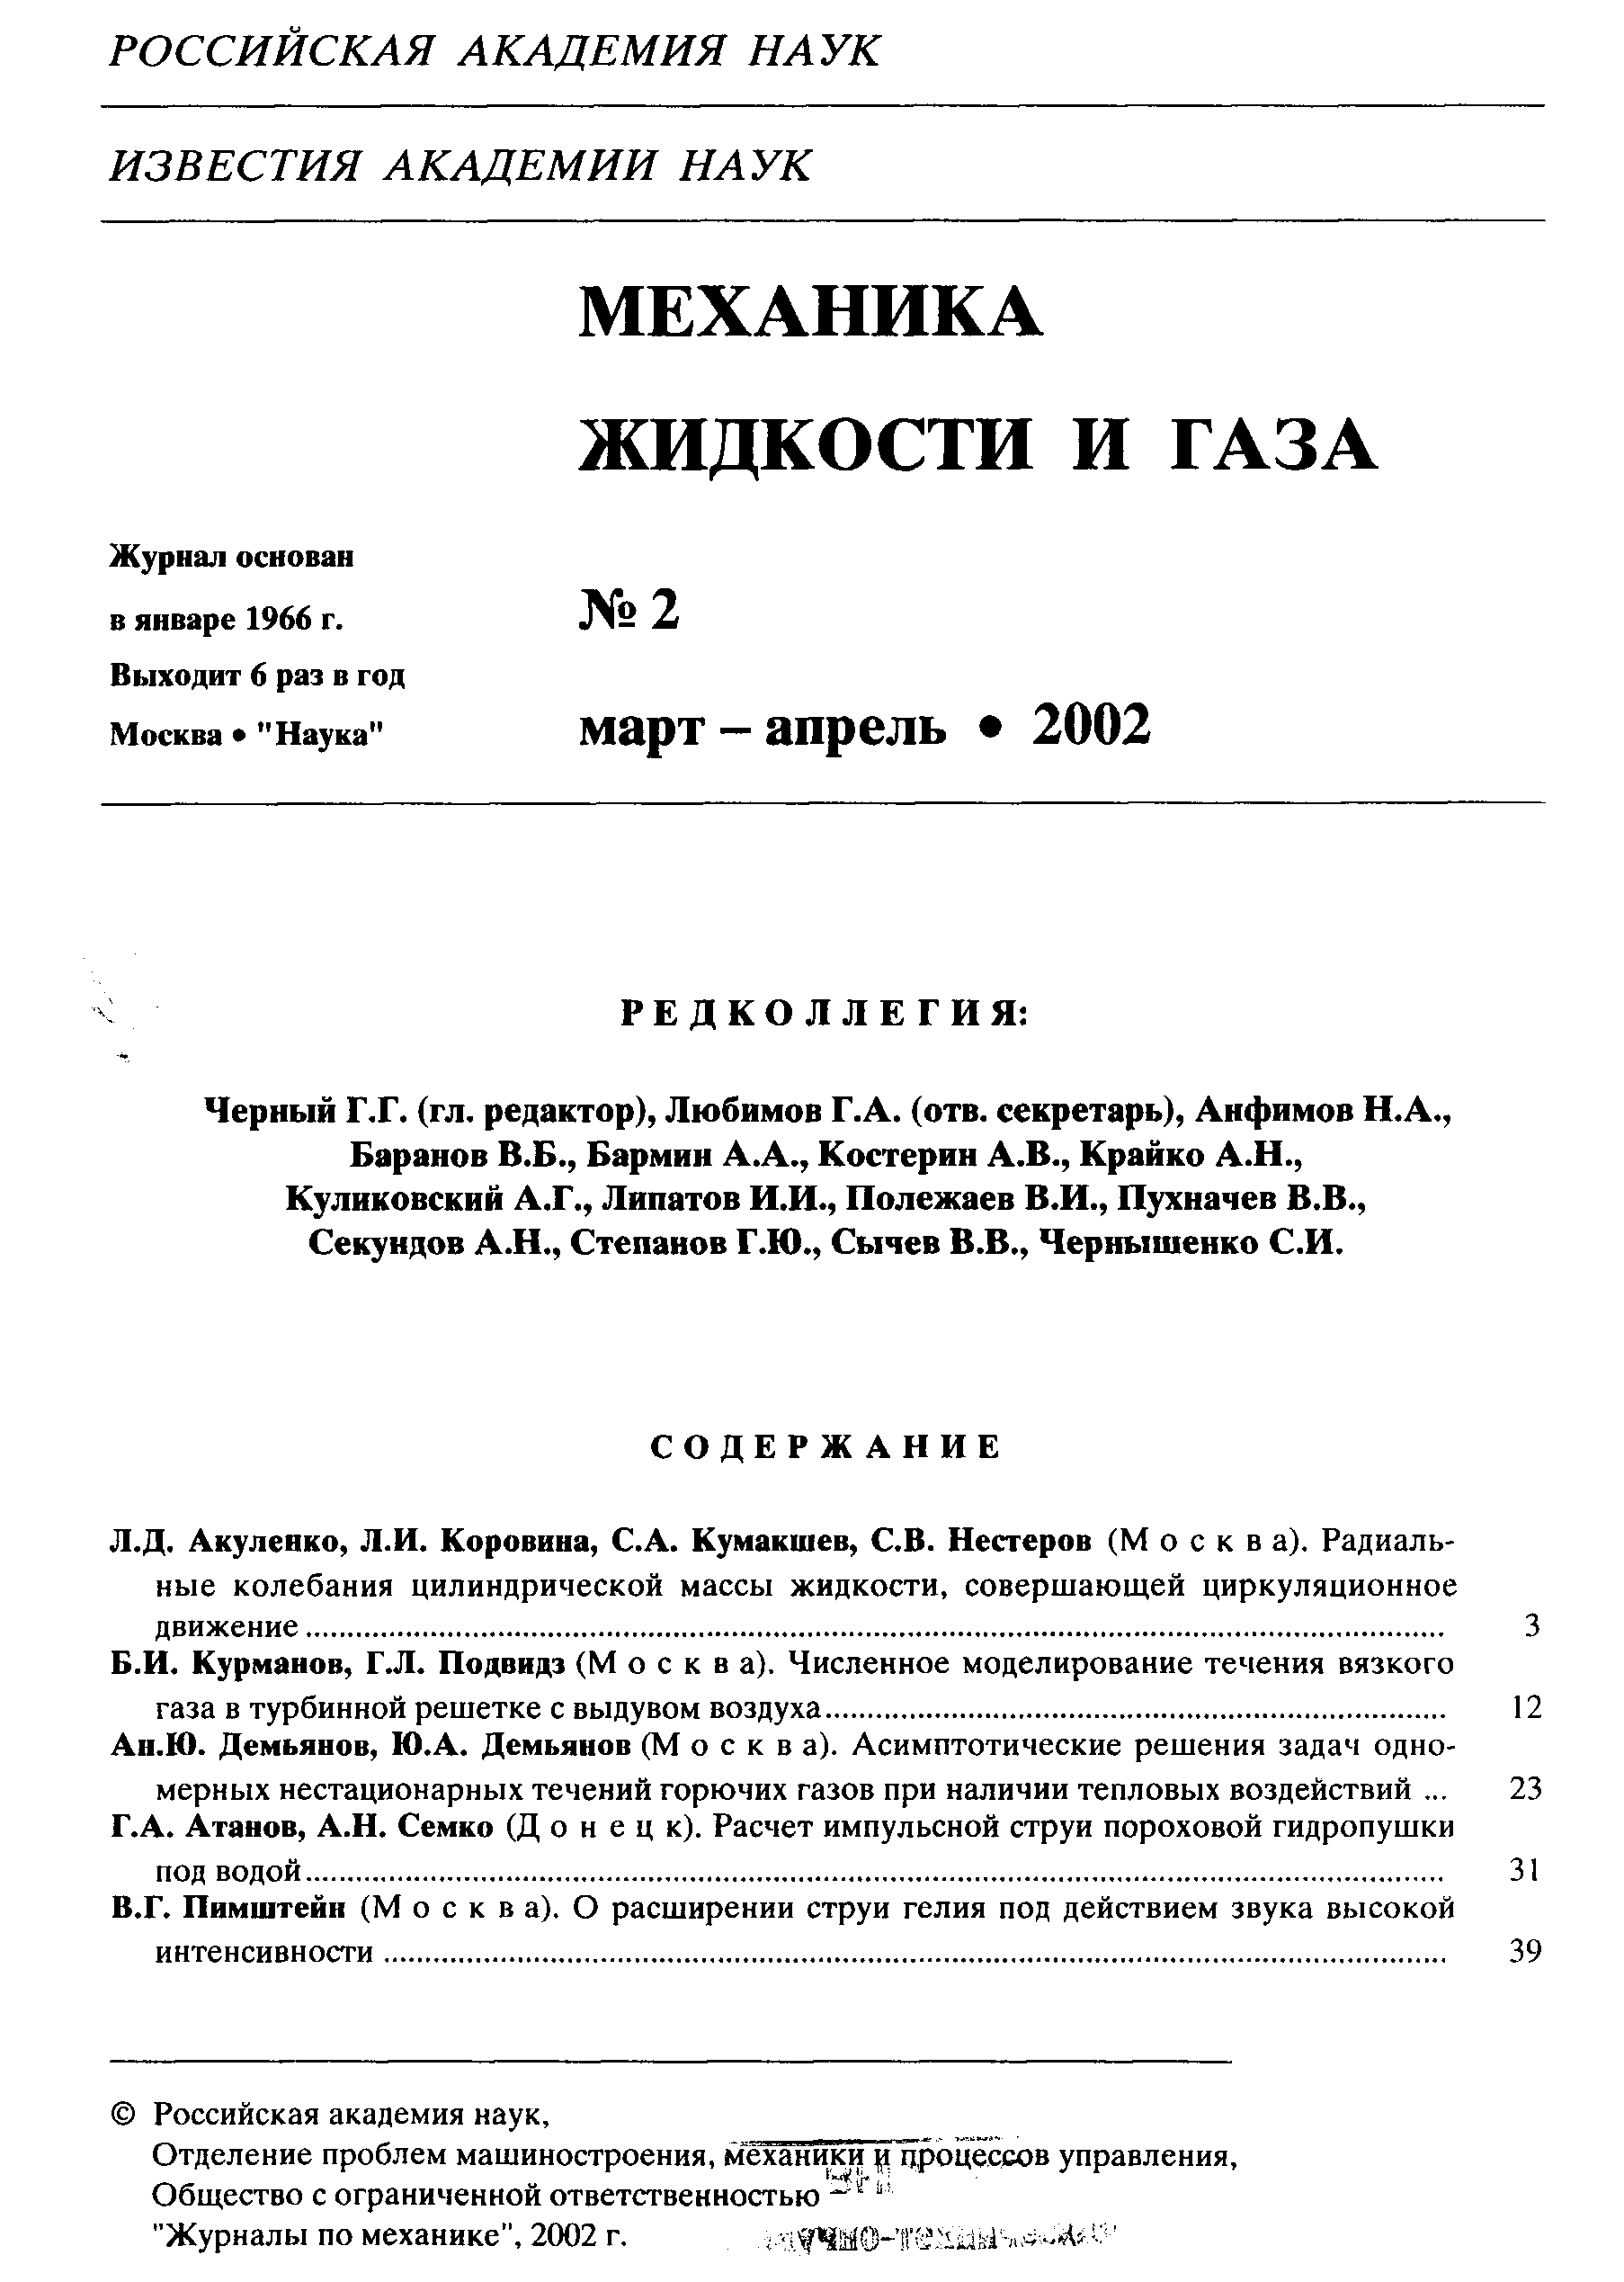 Российская академия наук.
